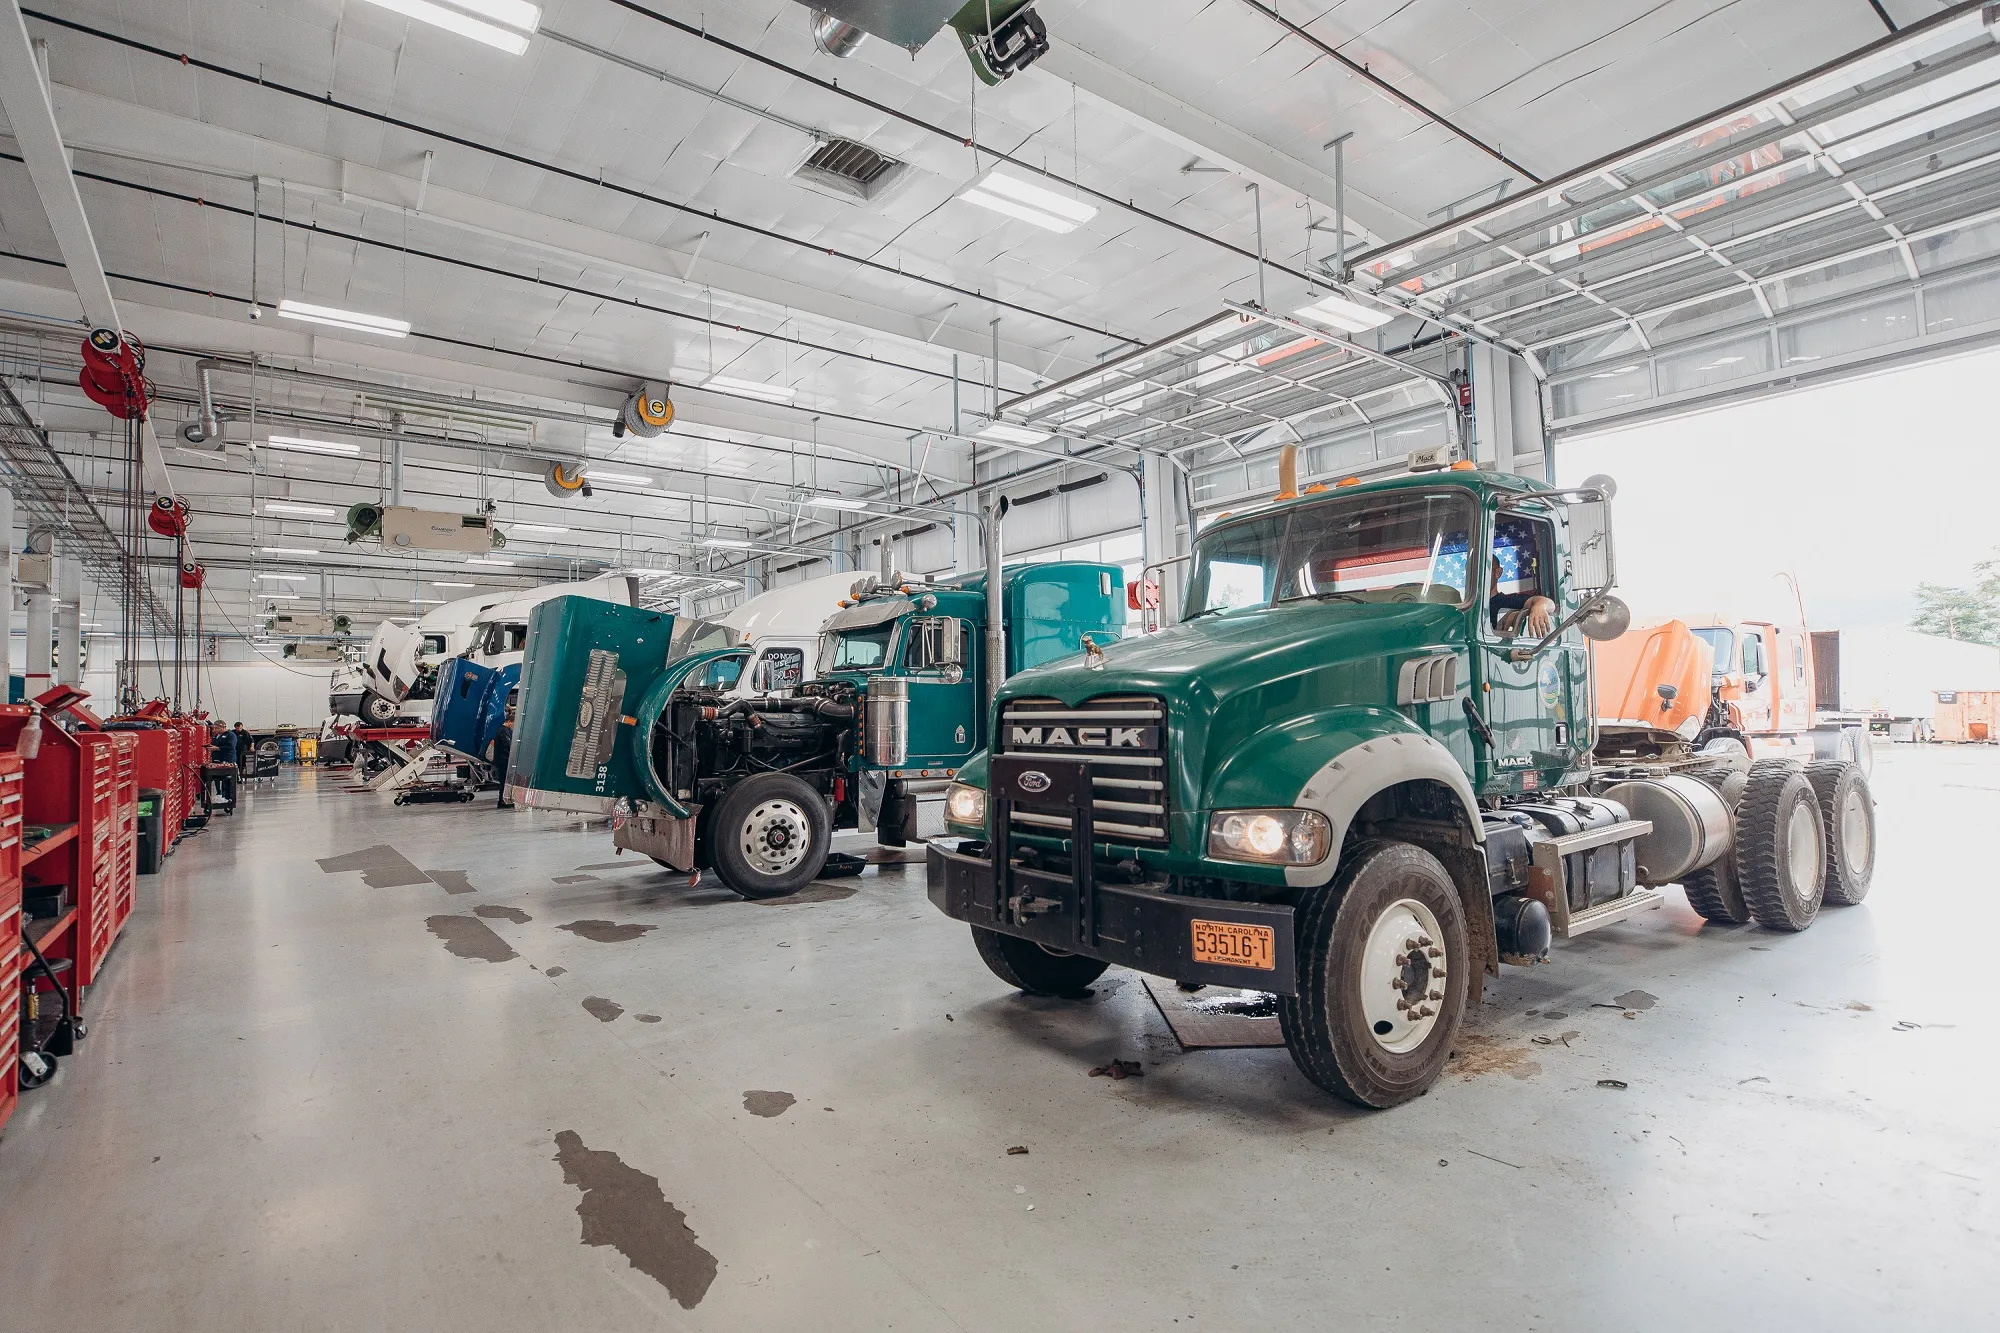 Truck Fleet Repair Shop: Commercial Fleet Repair Services at Asheville, NC